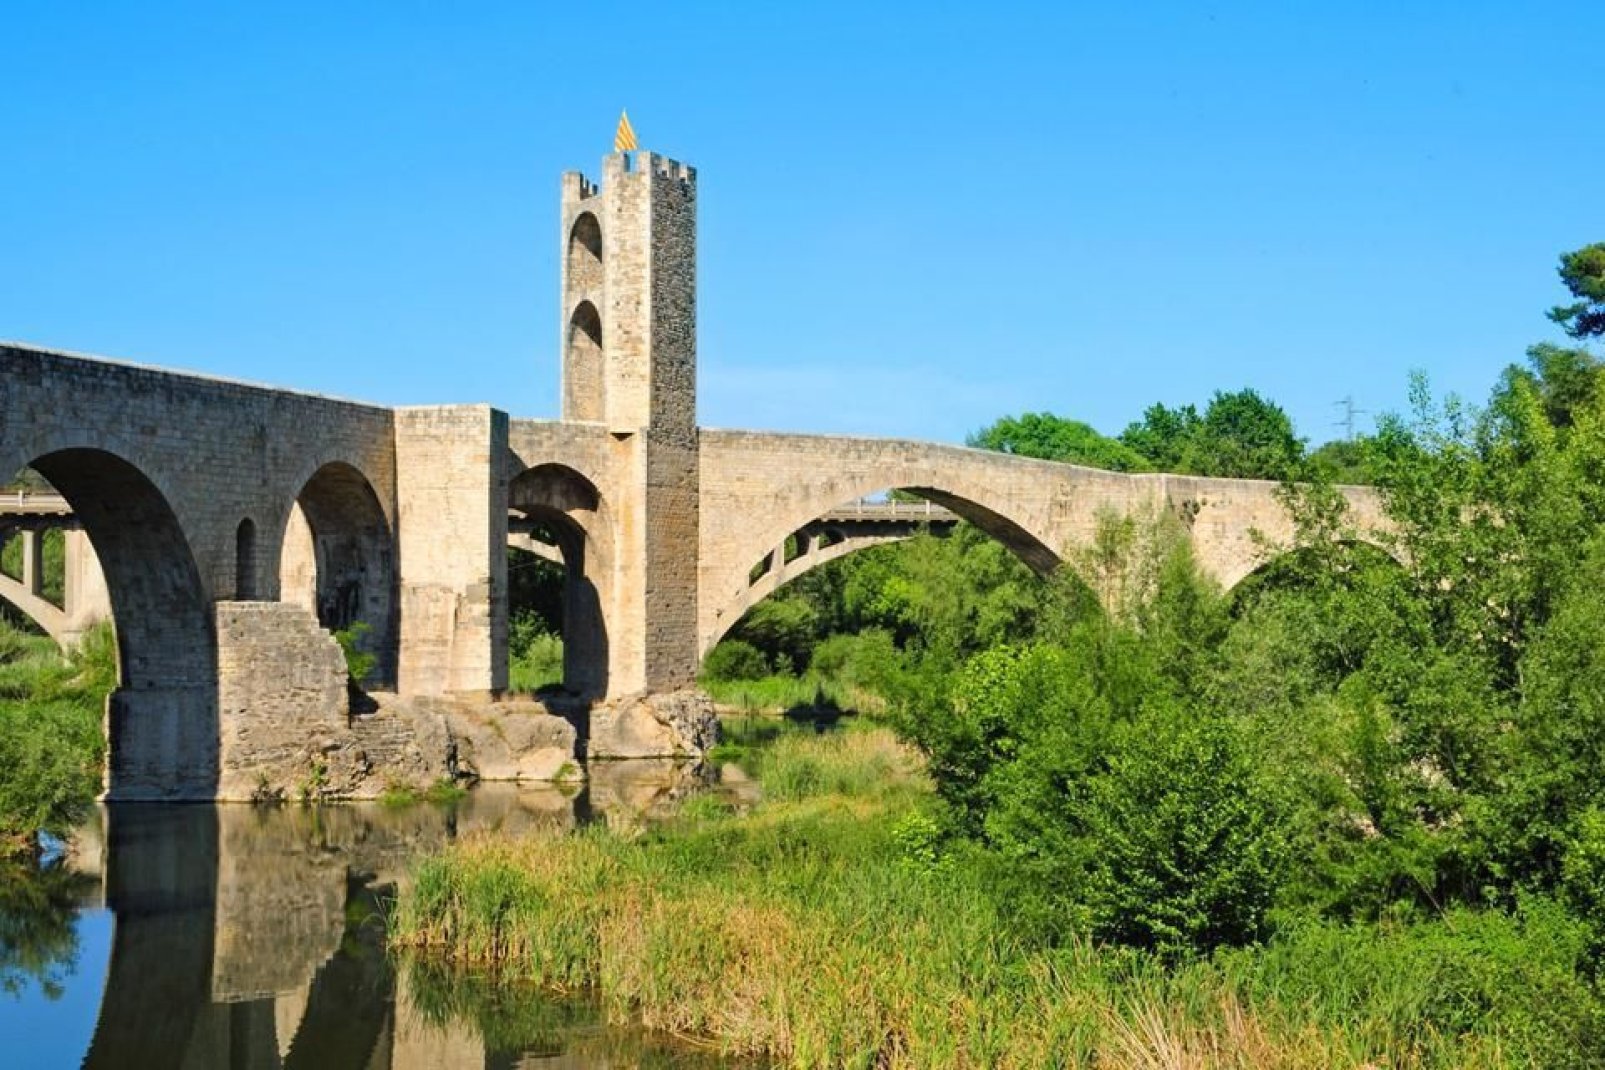 On accède à la ville par un magnifique pont roman du XIIème siècle qui surplombe le fleuve Fluvià.